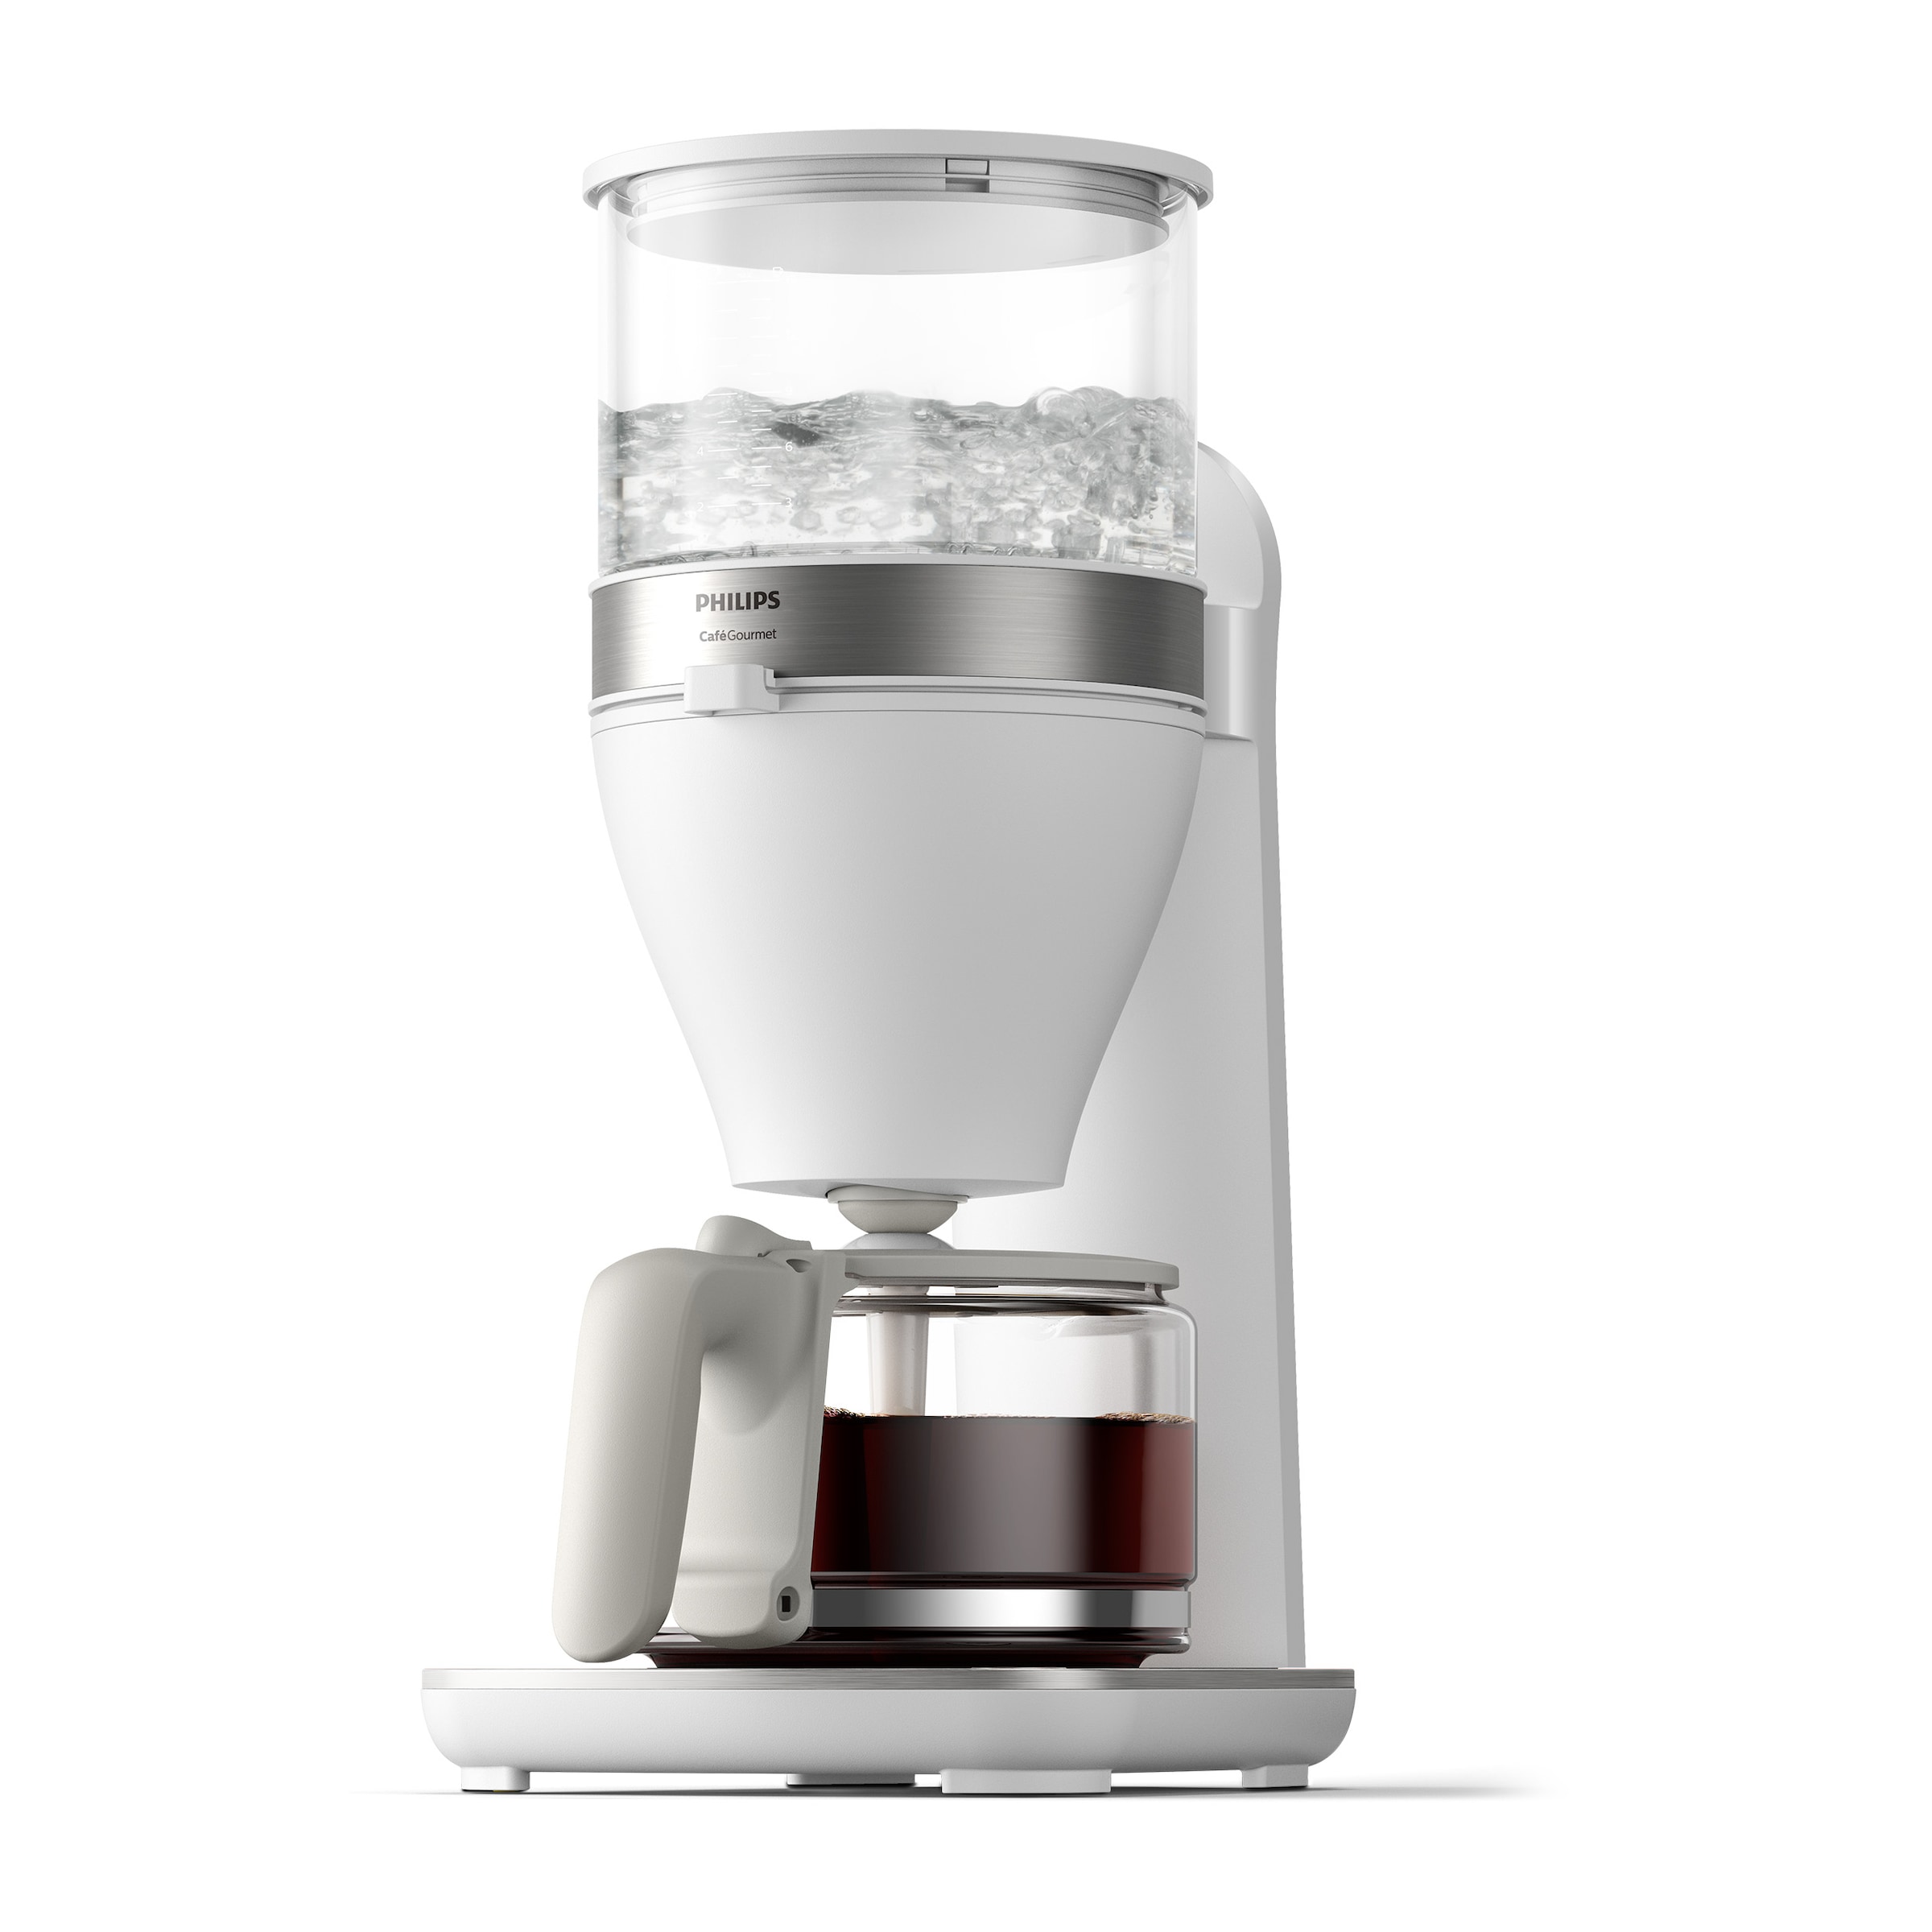 Philips Filterkaffeemaschine »HD5416/00 Café Gourmet weiß«, 1,25 l Kaffeekanne, Papierfilter, 1x4, mit Direkt-Brühprinzip, Aroma-Twister und Schwenkfilterhalter